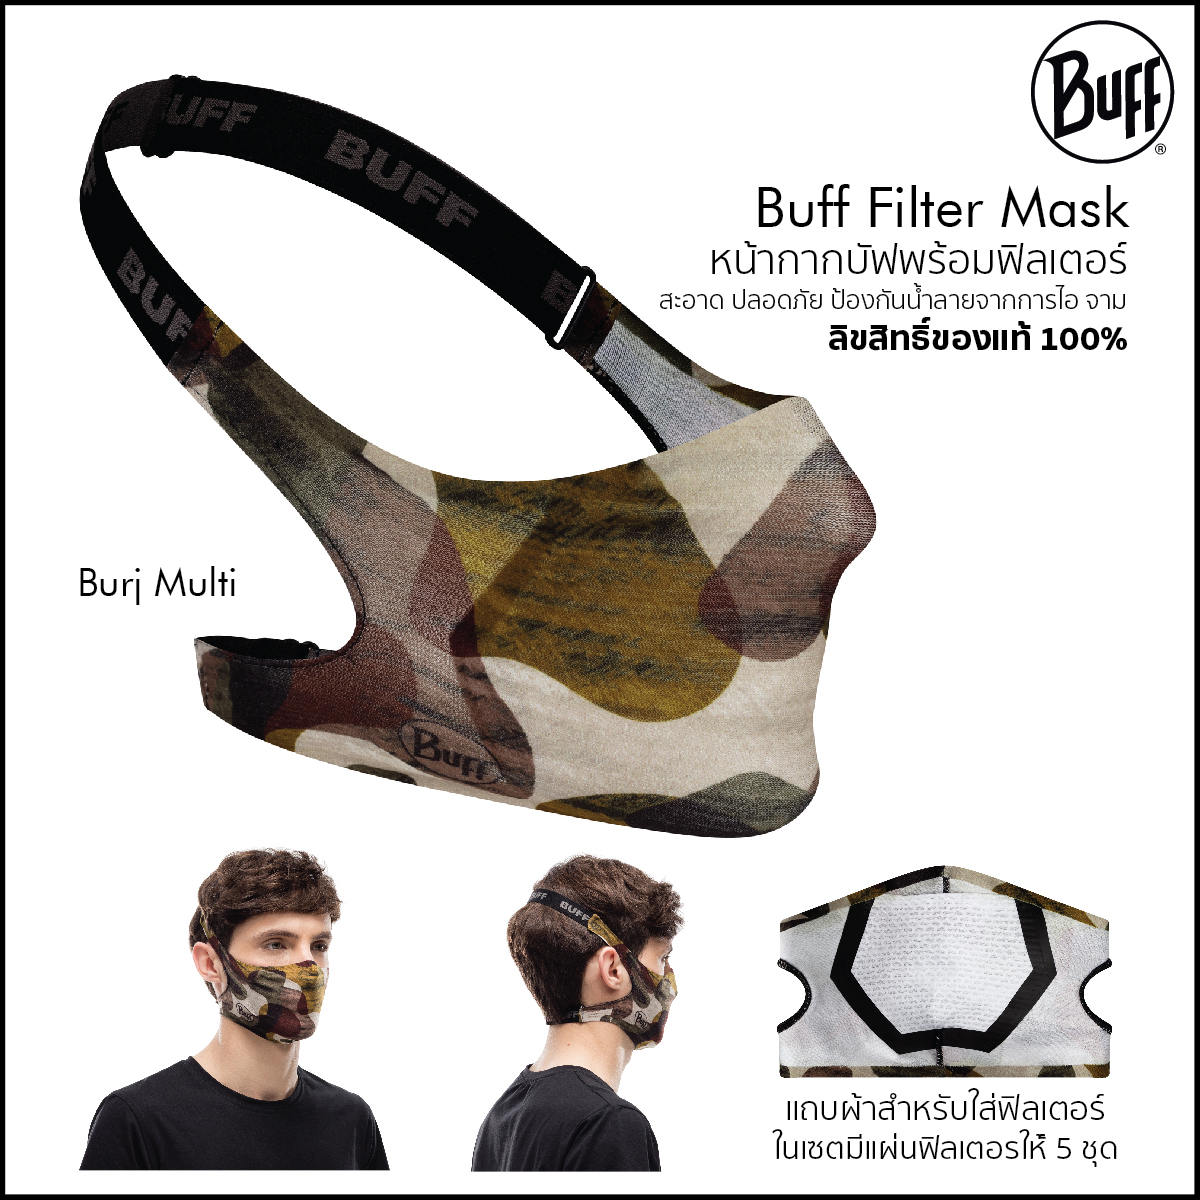 Buff Filter Mask หน้ากากบัฟพร้อมฟิลเตอร์ หน้ากากผ้าใส่ได้ทุกวัน สินค้าใหม่ล่าสุดจาก Buff